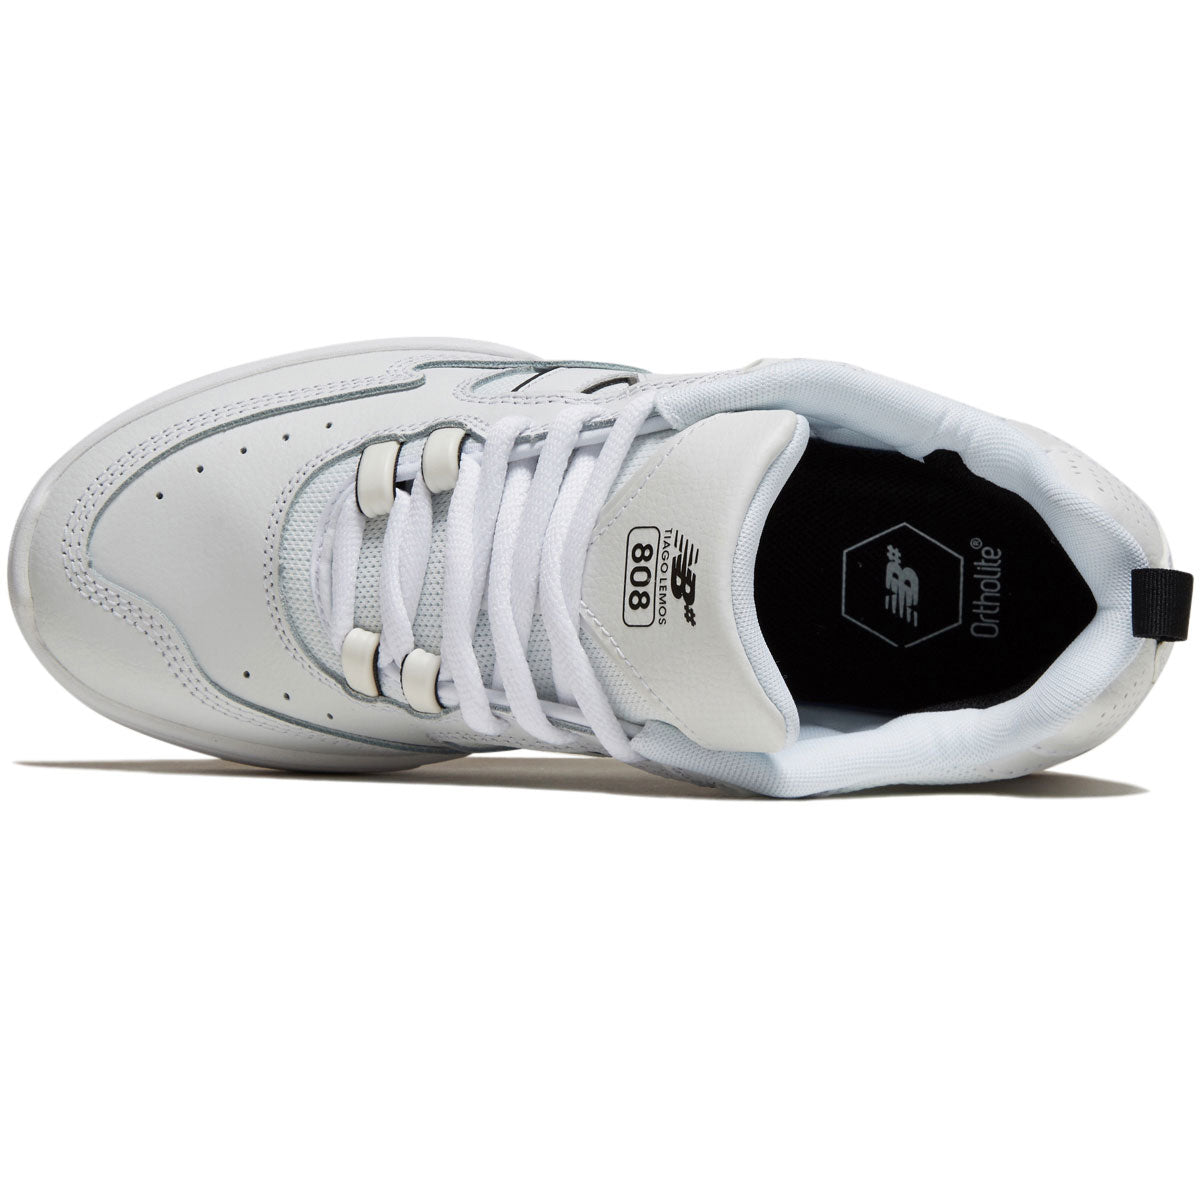 New Balance 808 Tiago Shoes - White image 3